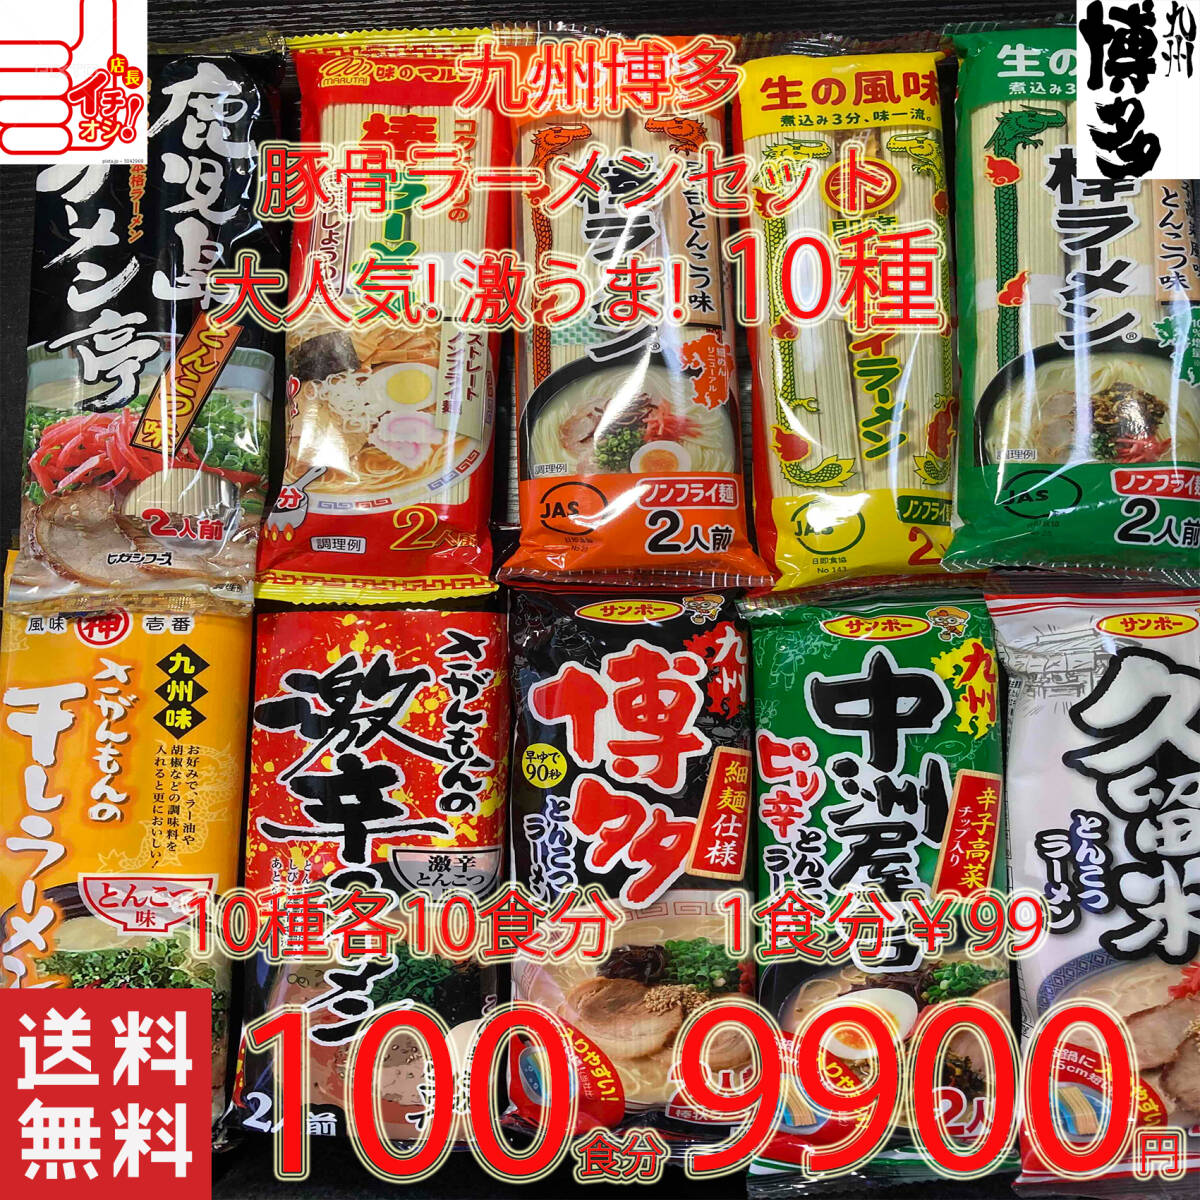 激安 大人気 九州博多 豚骨ラーメンセット 10種類 おすすめ セット 全国送料無料56